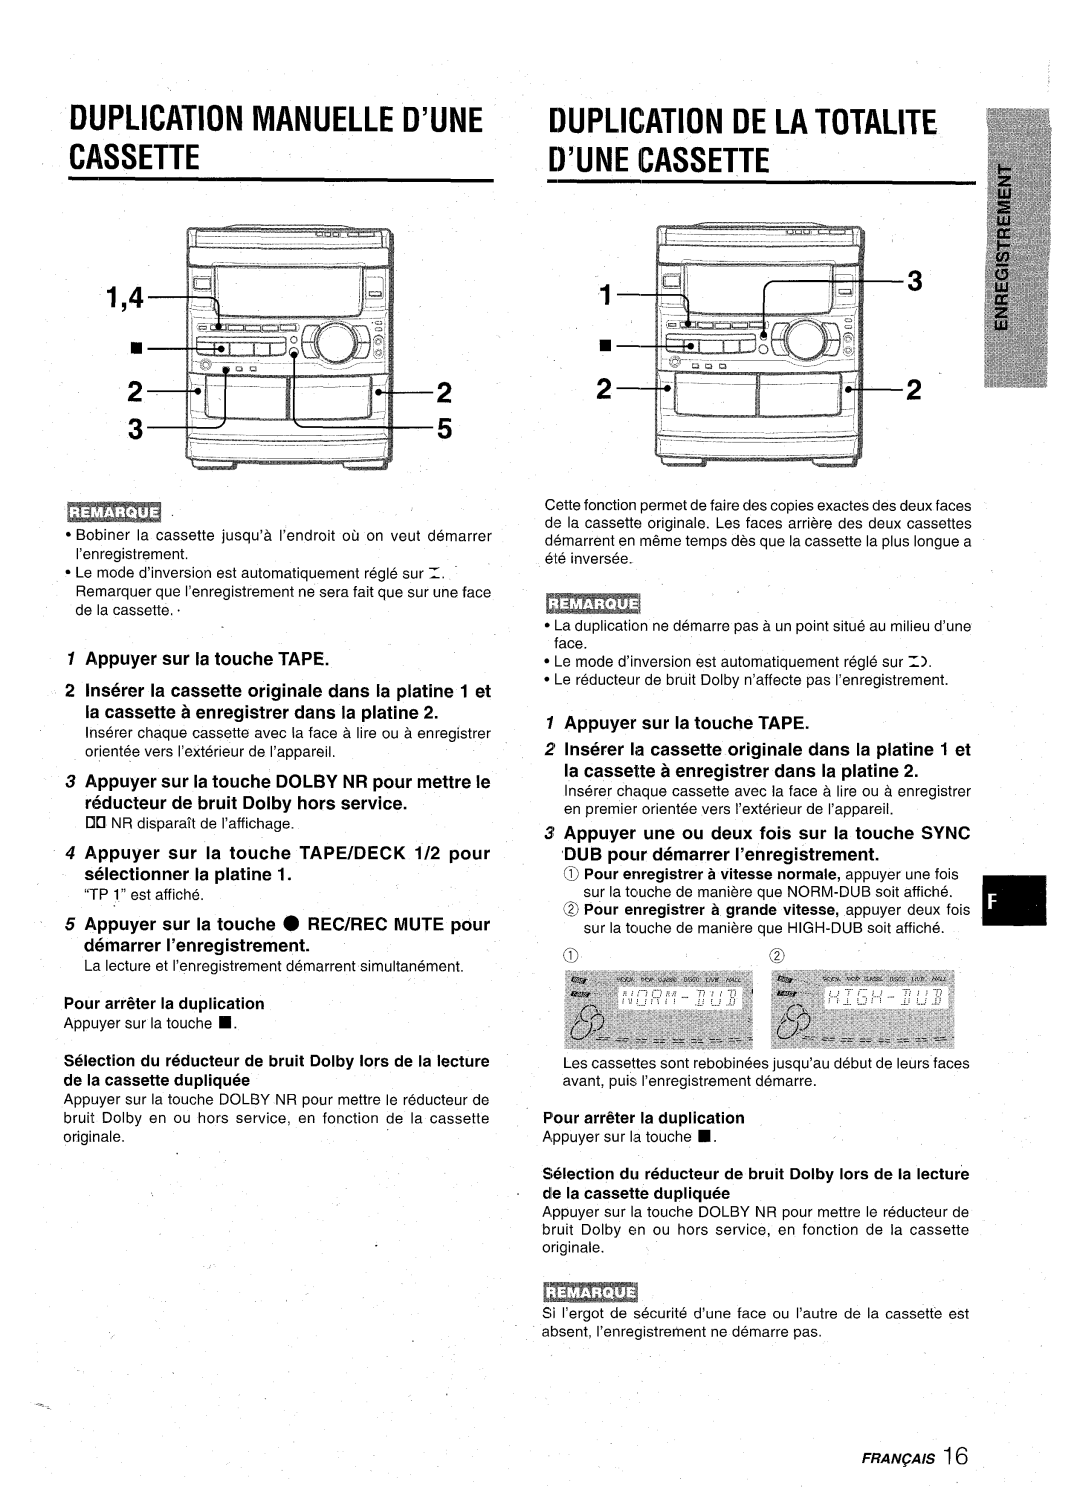 Aiwa CX-NA92 manual Duplication Manuelle D’Une Duplication De La Totaute, D’Une Cassette, Appuyer sur la touche TAPE 